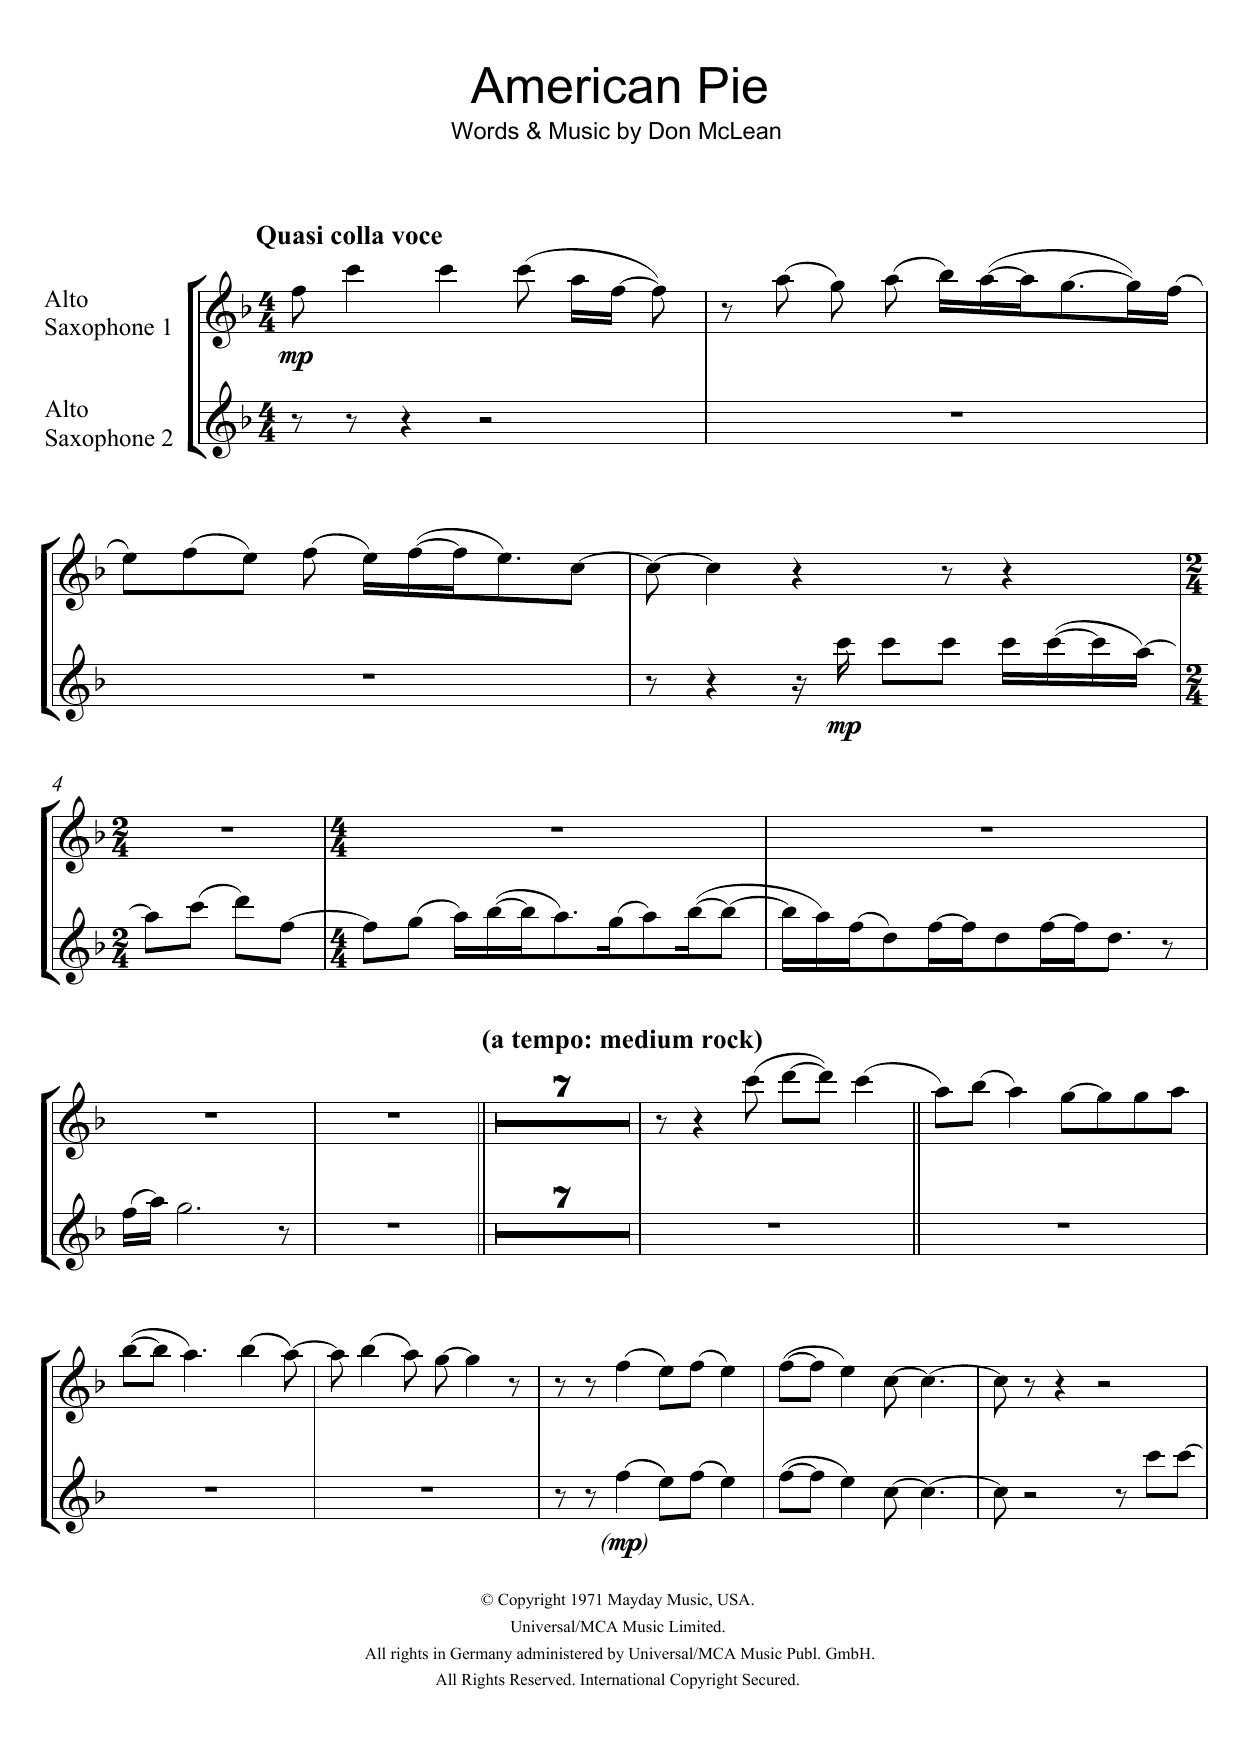 American Pie Chords Sheet Music Digital Files To Print Licensed Don Mclean Digital